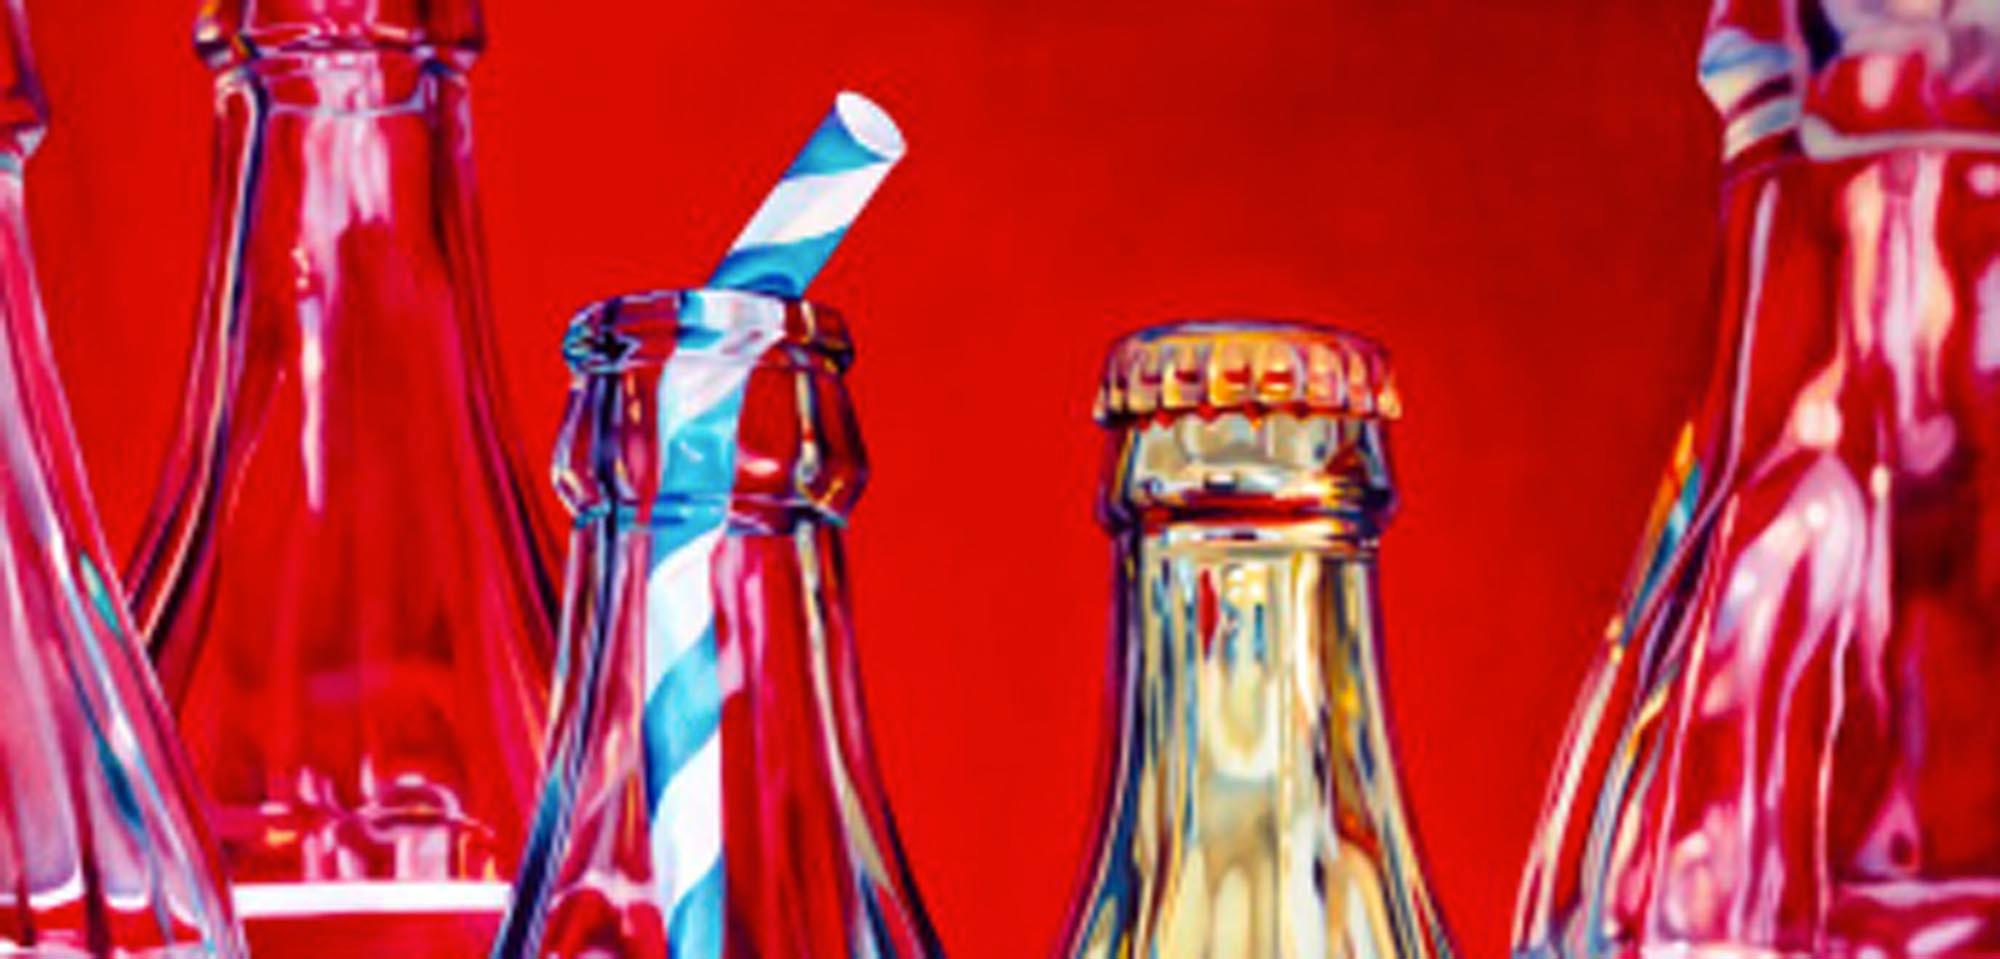 I Colon et paille rayée, nature morte pop art sérigraphie rouge, art coca cola - Contemporain Print par Kate Brinkworth